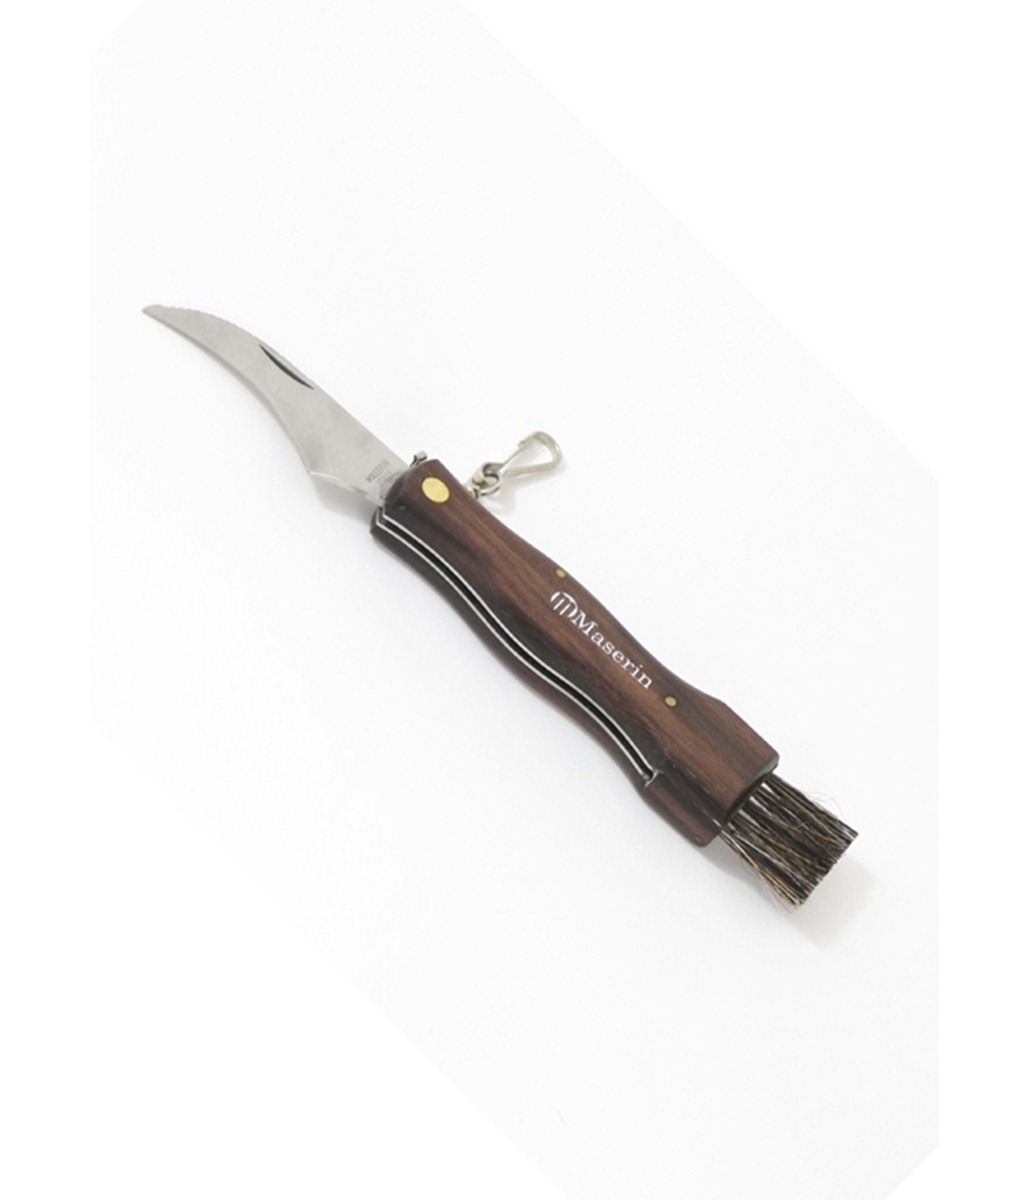 MUSHROOM KNIFE IN WALNUT WITH SHORT BLADE